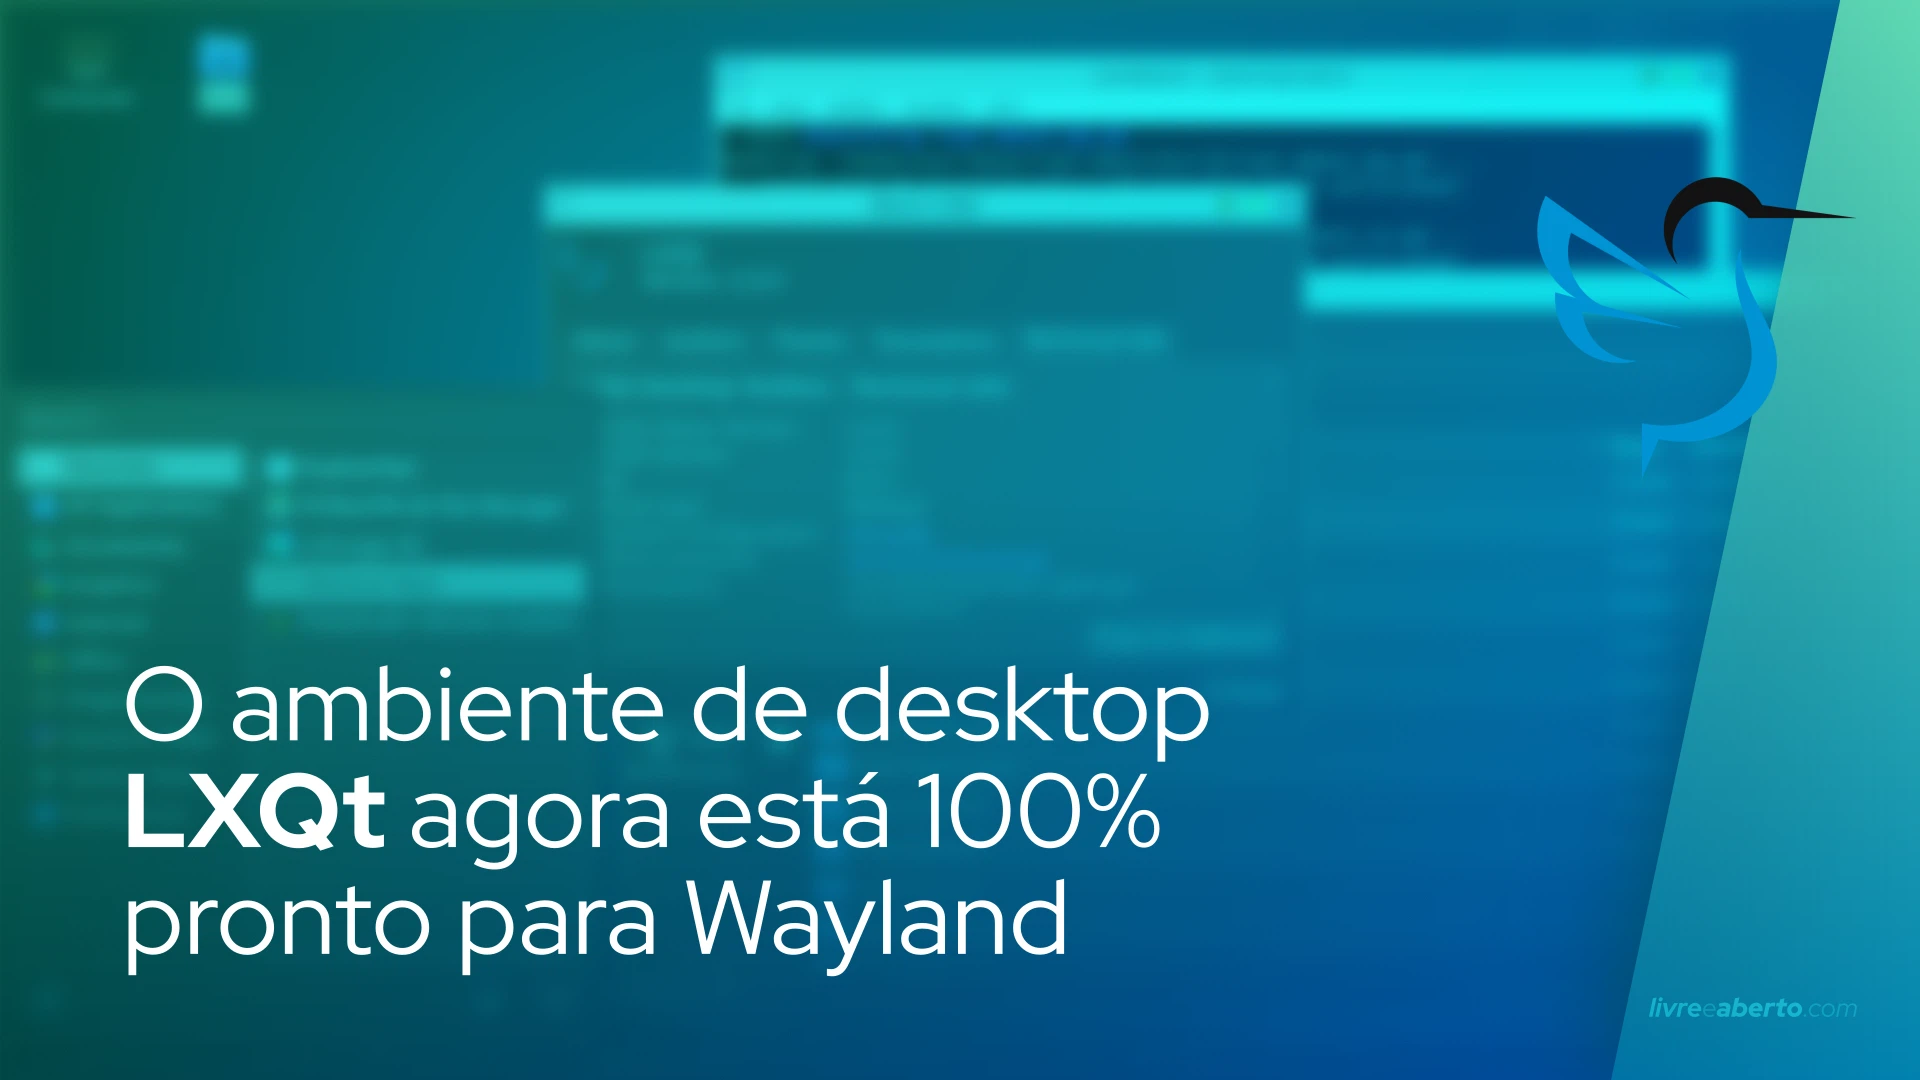 O ambiente de desktop LXQt agora está 100% pronto para Wayland